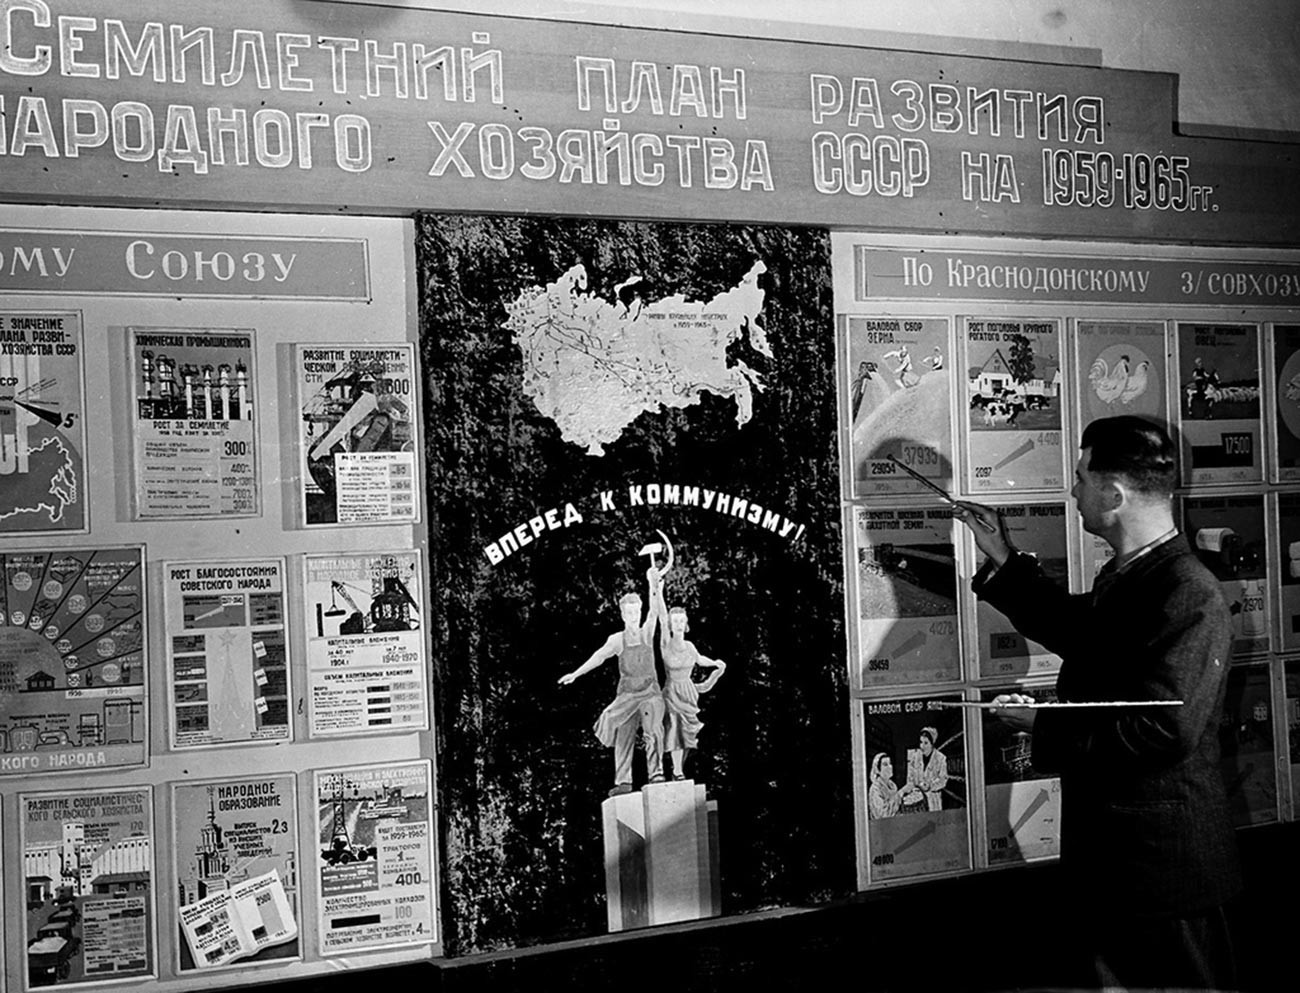 Asisten pengemudi gabungan Fyodor Frolov sedang mempelajari rencana pengembangan pertanian tujuh tahun di Pusat Komunitas Krasnodonsky Sovkhoz, Kazakhstan, 1959.